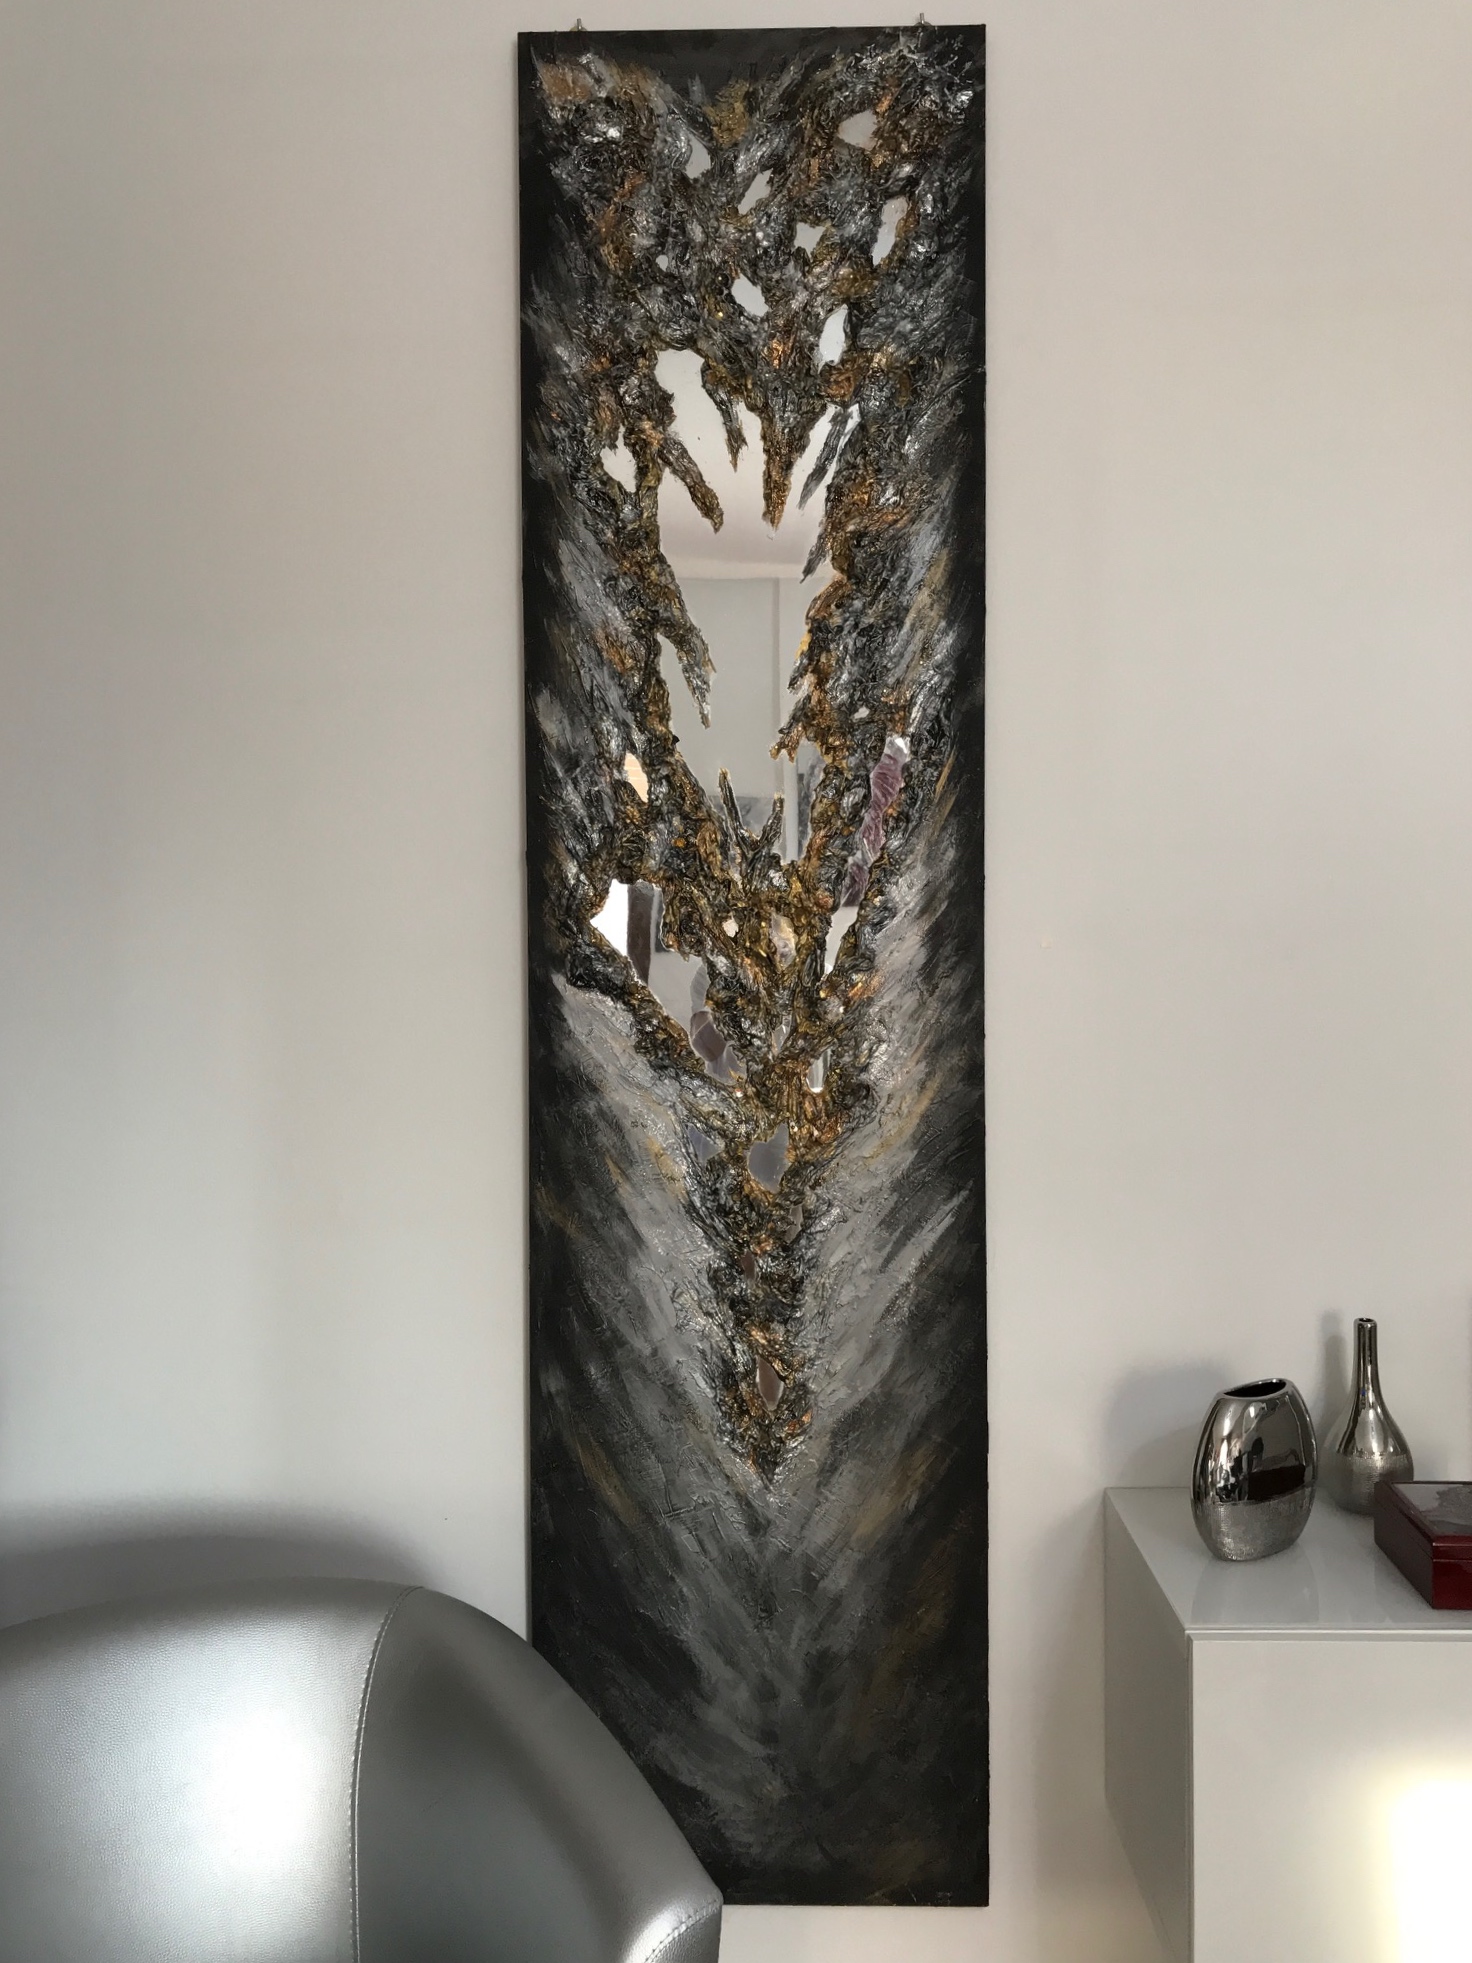 Pannello grigio con specchio / Gray panel with mirror